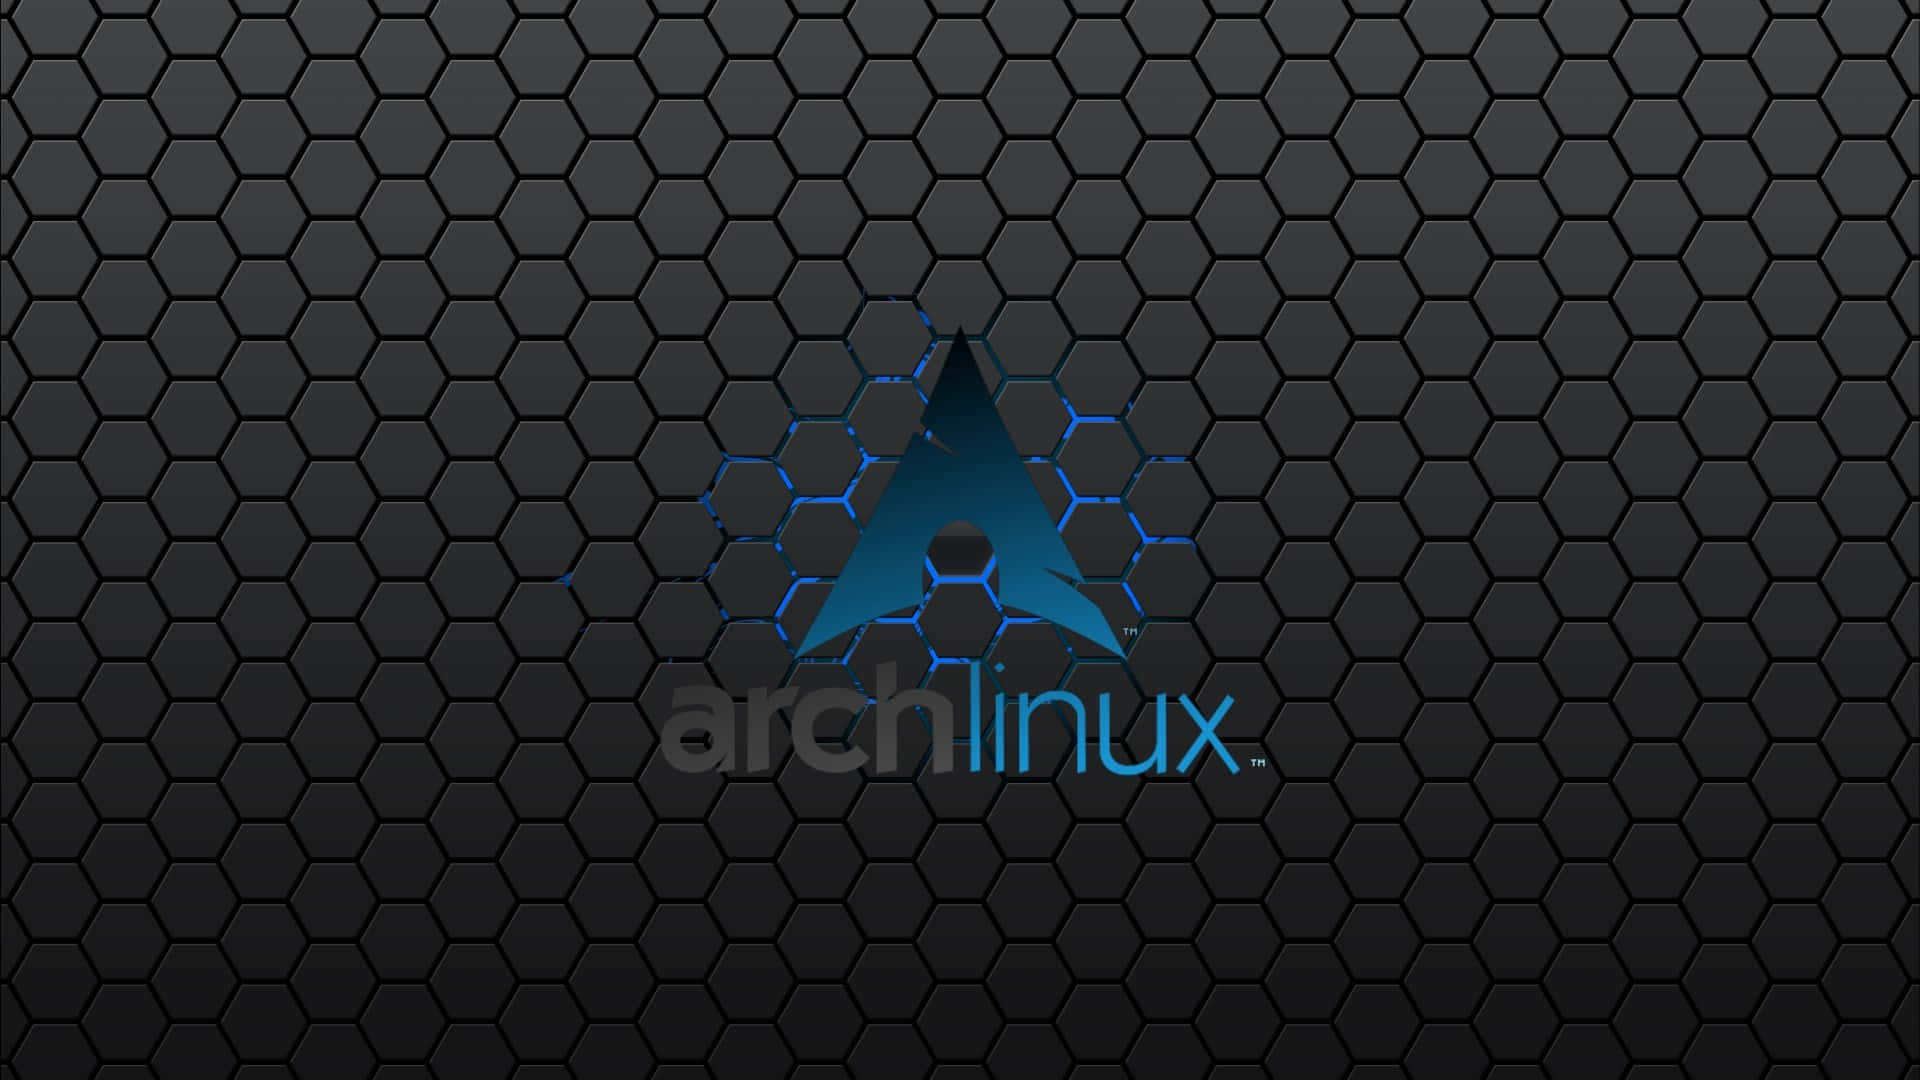 Arch Linux Wallpaper - Sleek and Modern Wallpaper